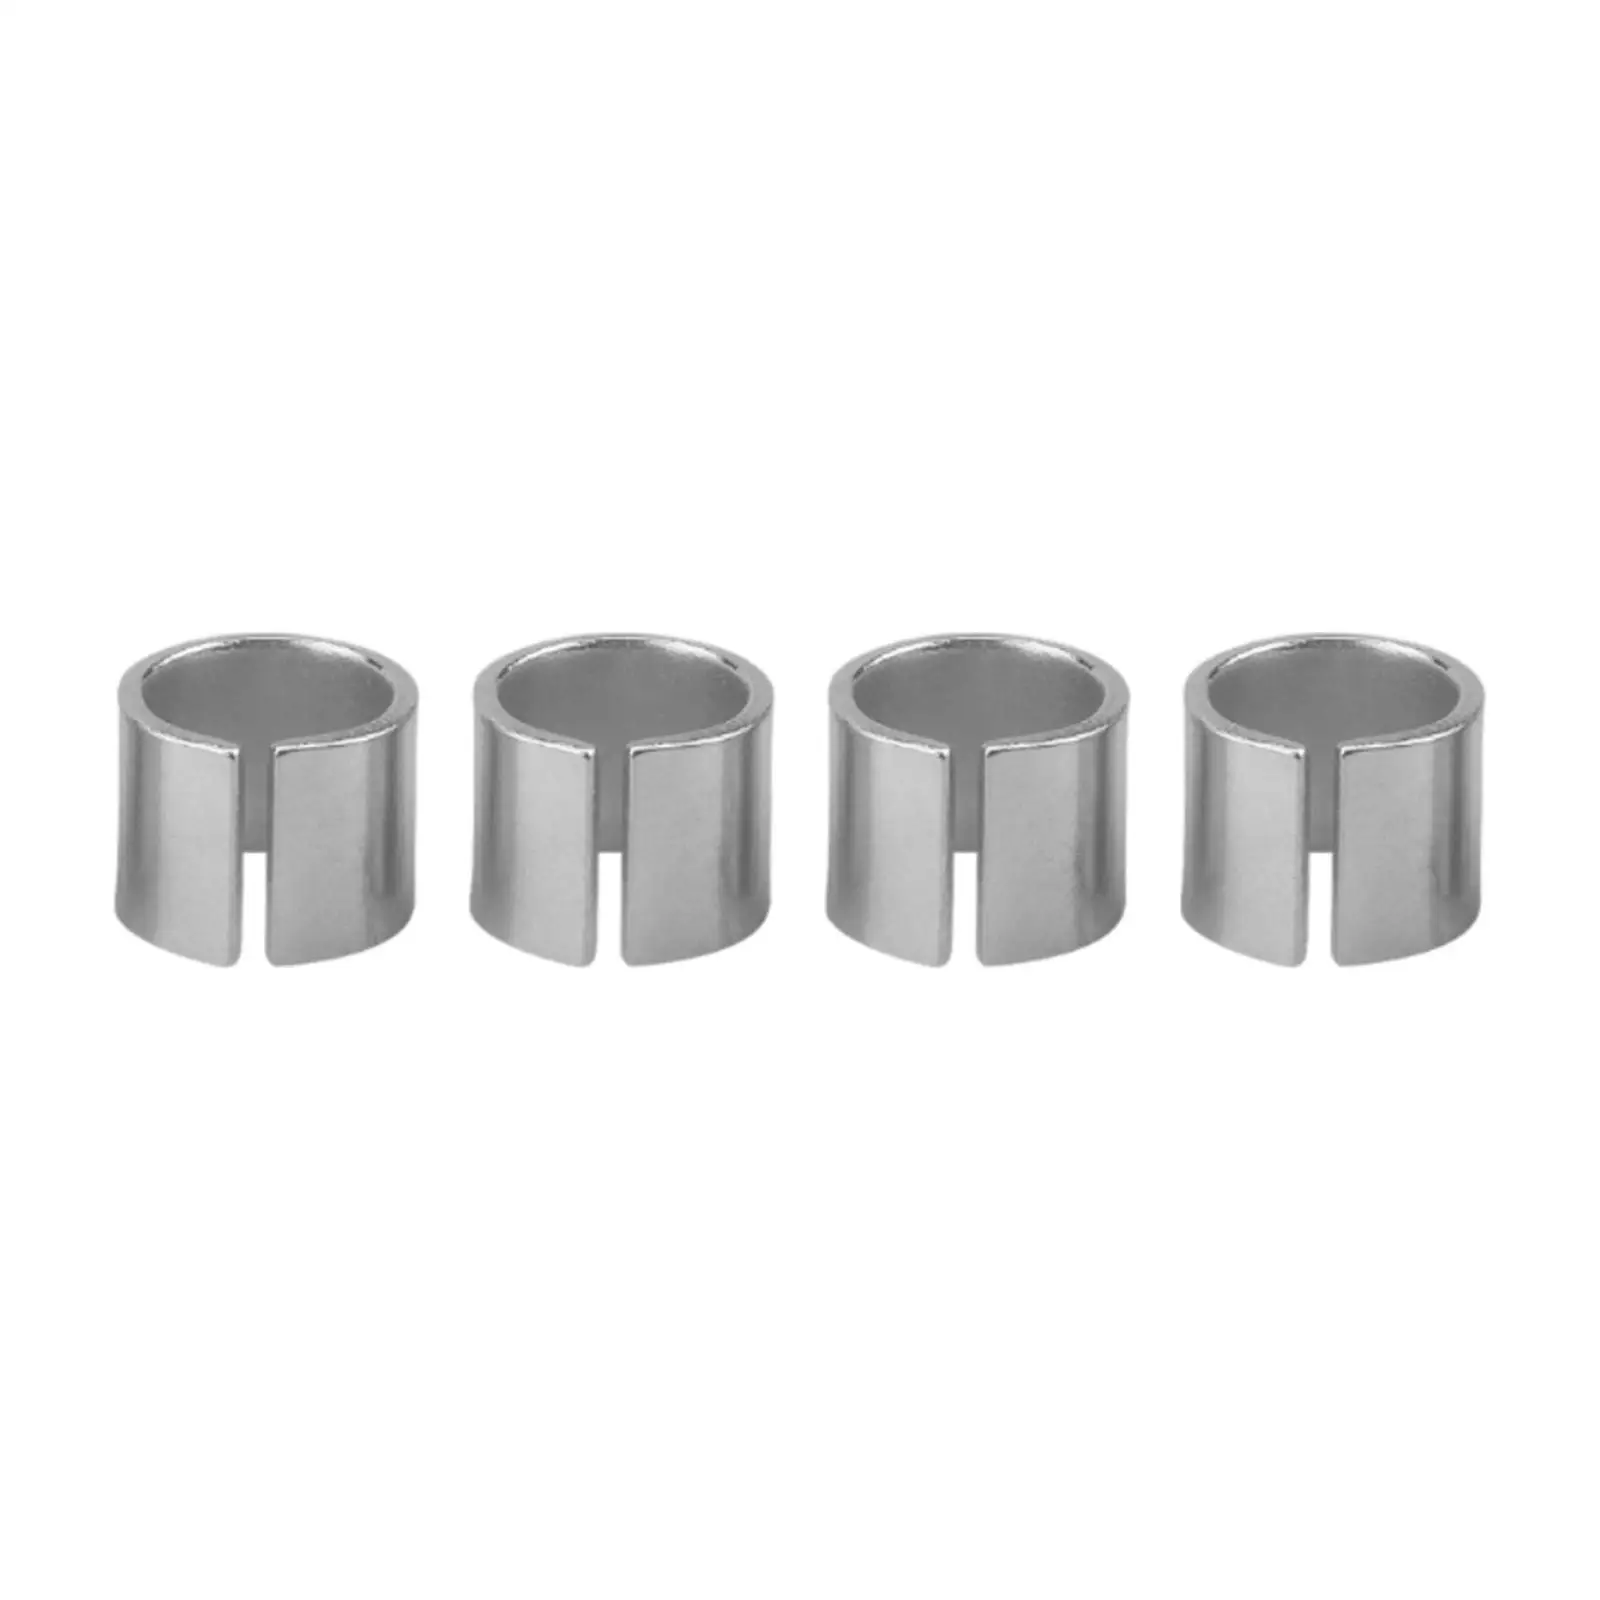 4 Pieces Cylinder Head Dowel Pin Durable replace Chevy ls LT L92 L99 L33 LR4 Lq9 LS6 Accessory LS1 LS3 LS2 Lq4